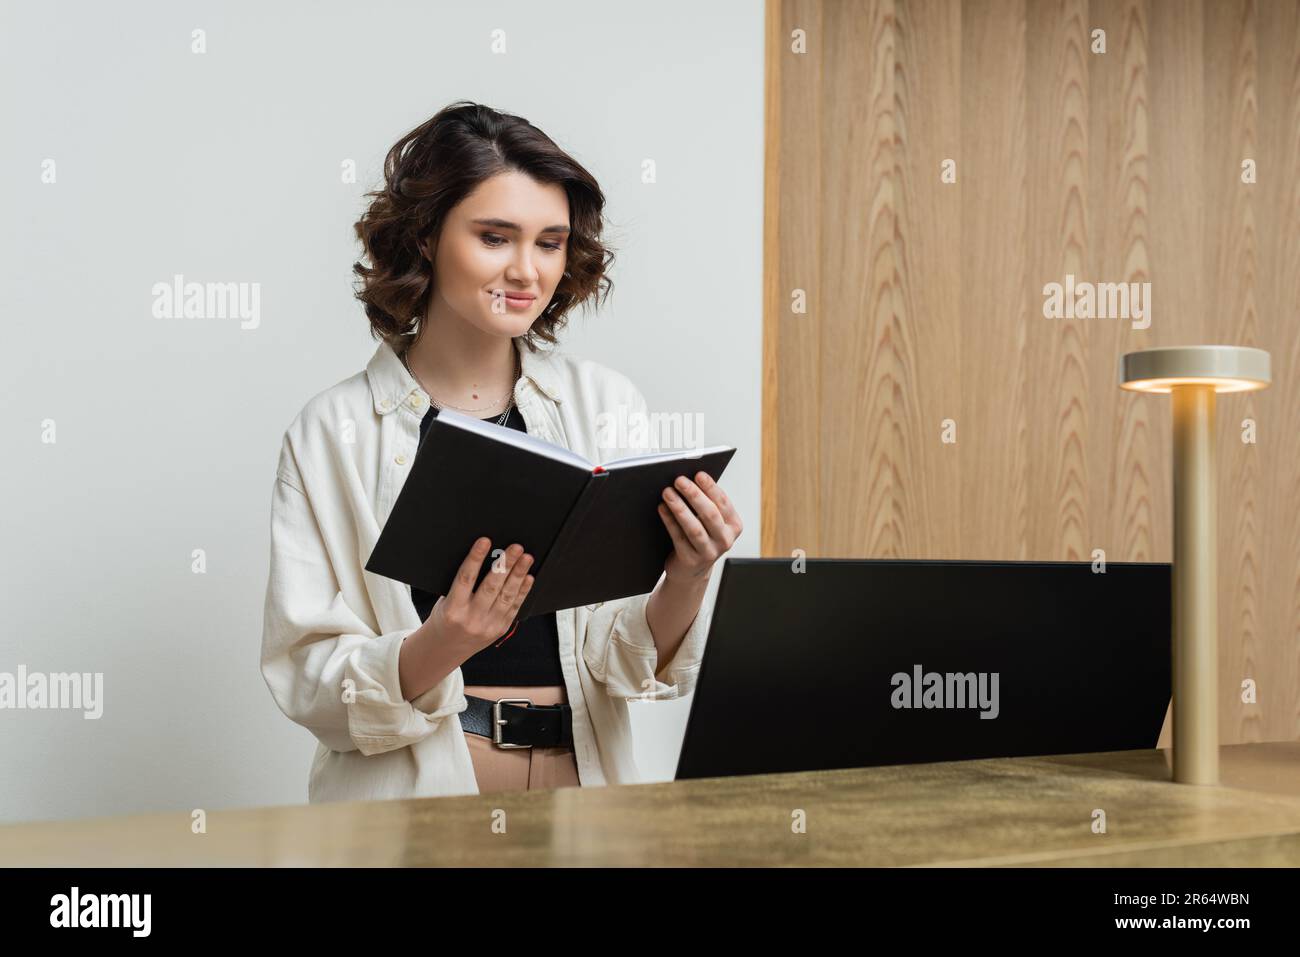 une réceptionniste positive dans des vêtements tendance et décontractés, avec des cheveux bruns ondulés et un ordinateur portable près de l'écran de l'ordinateur et de la lampe à la réception dans le hall o Banque D'Images